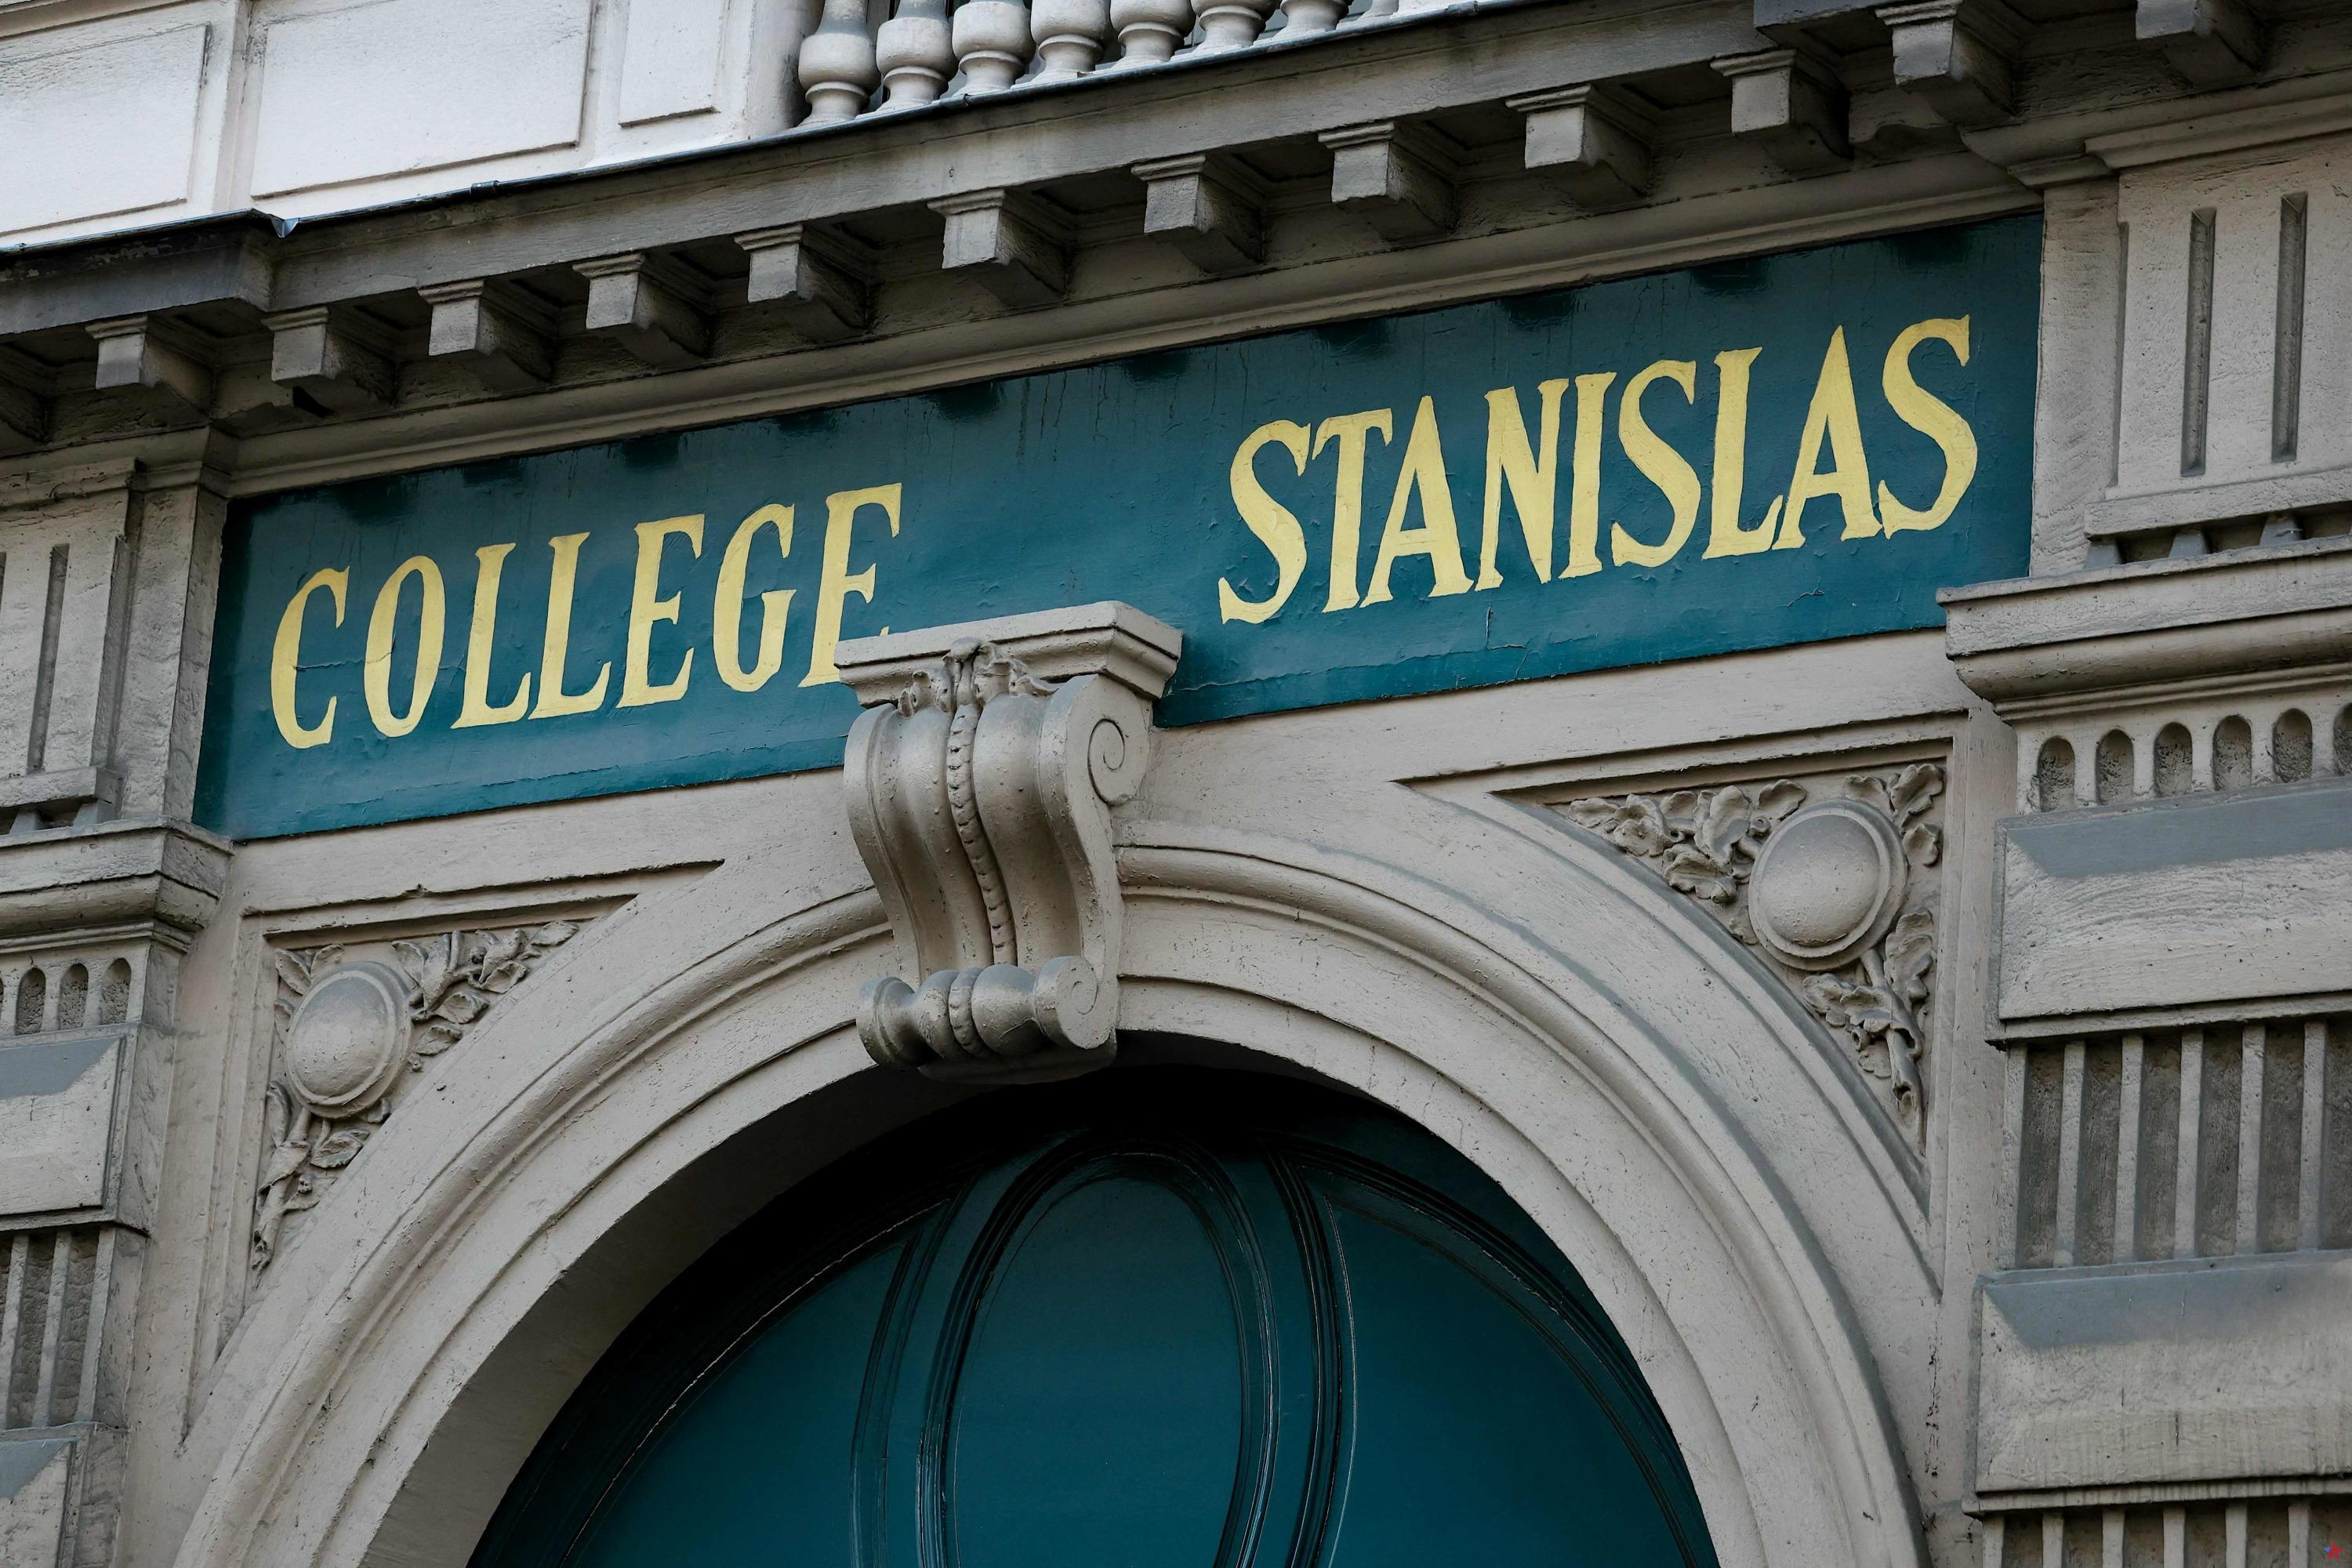 Escuela Stanislas: la fiscalía abre una investigación por insultos sexistas y homofóbicos